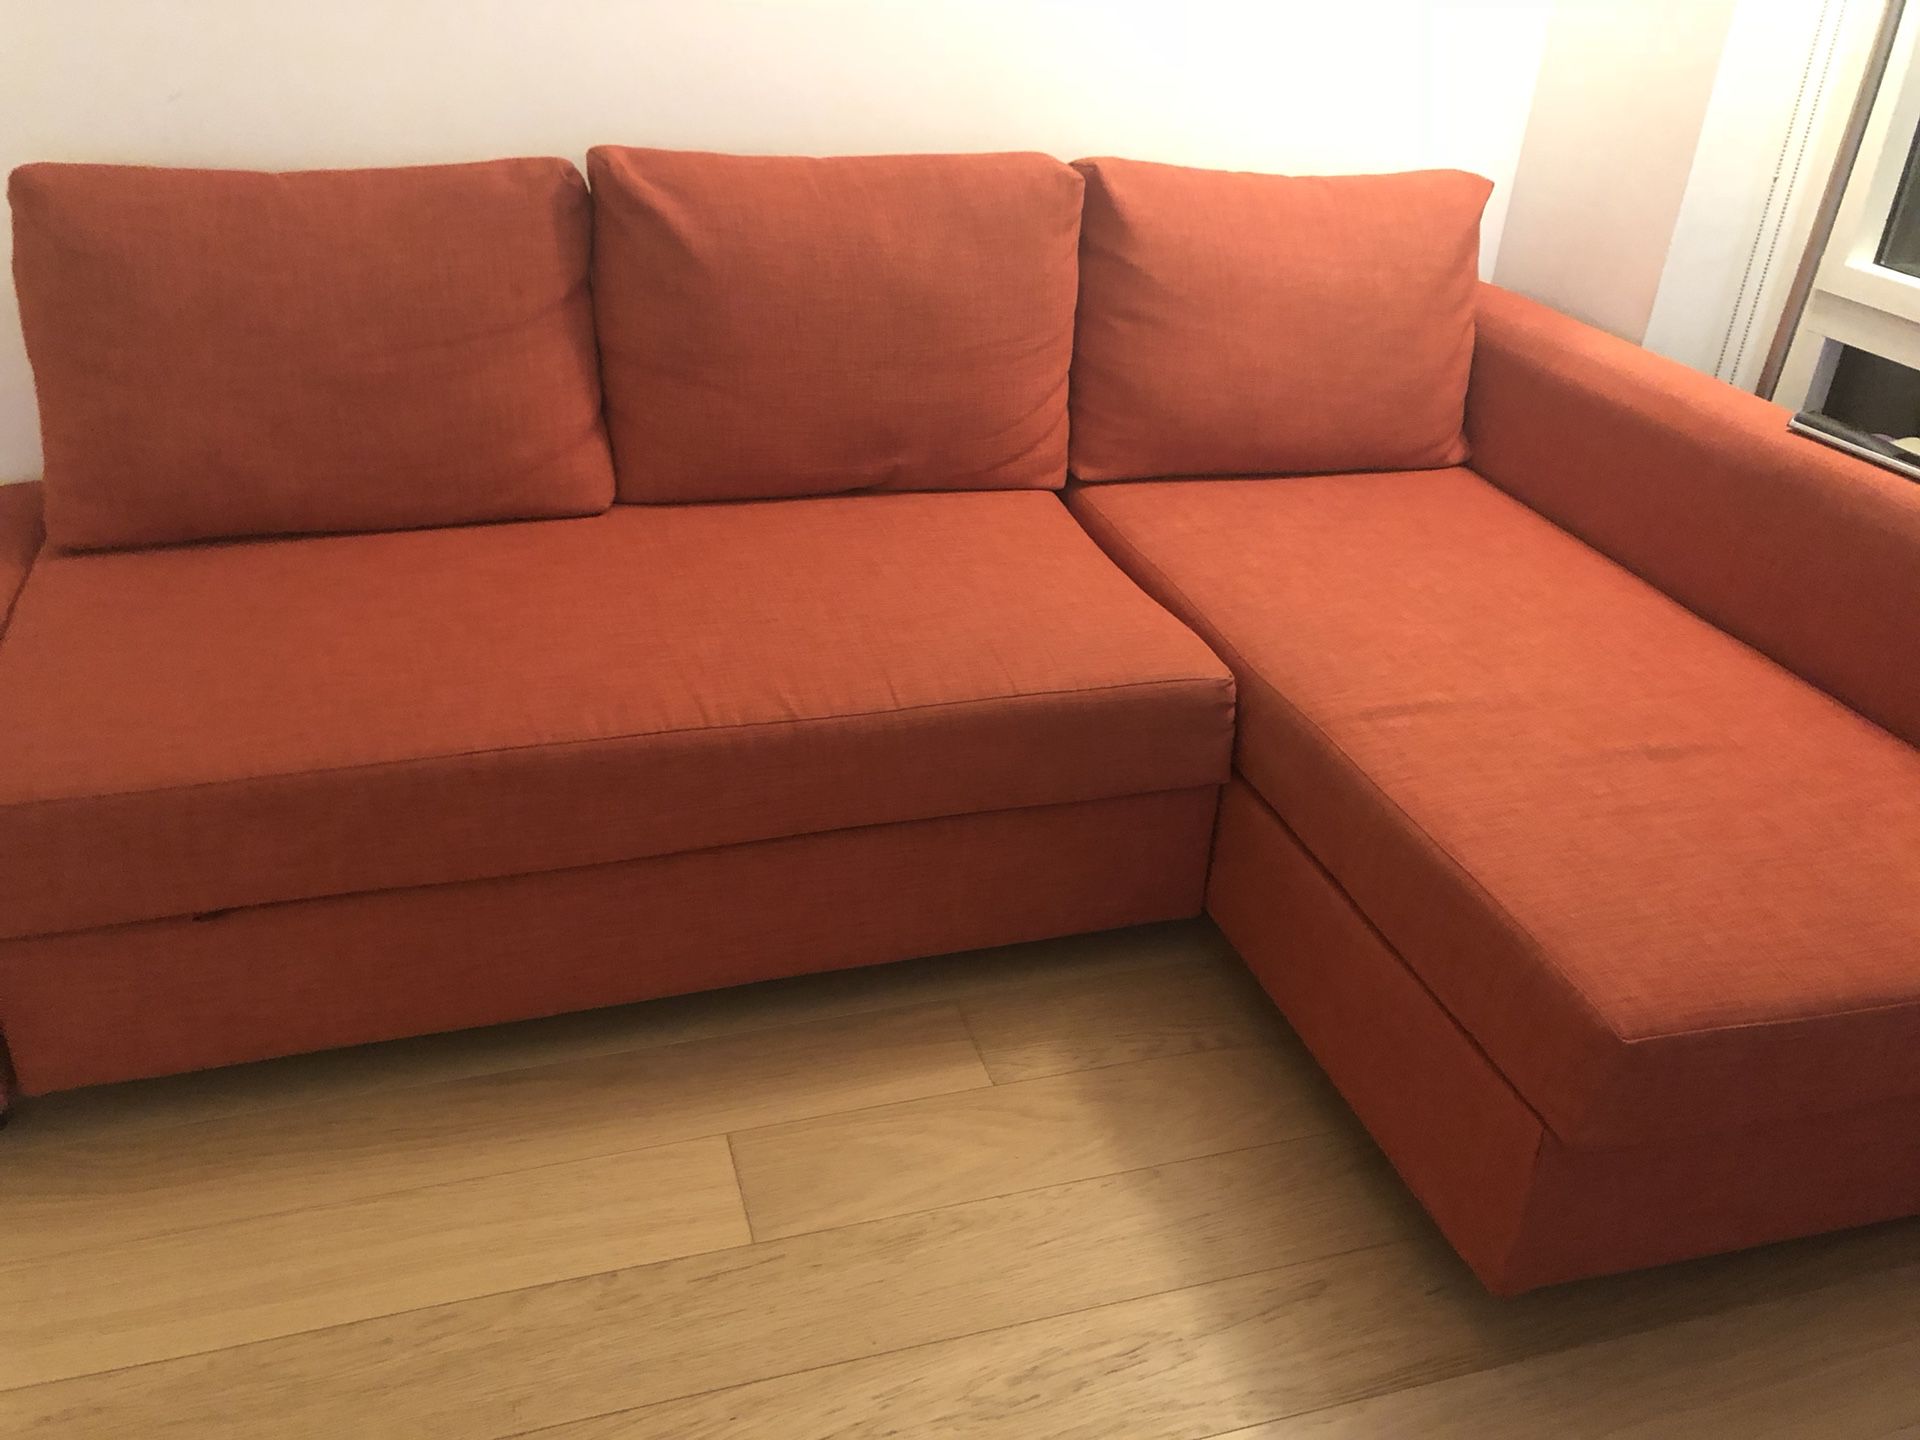 New Sleeper Sofa Orange *Great condition!*